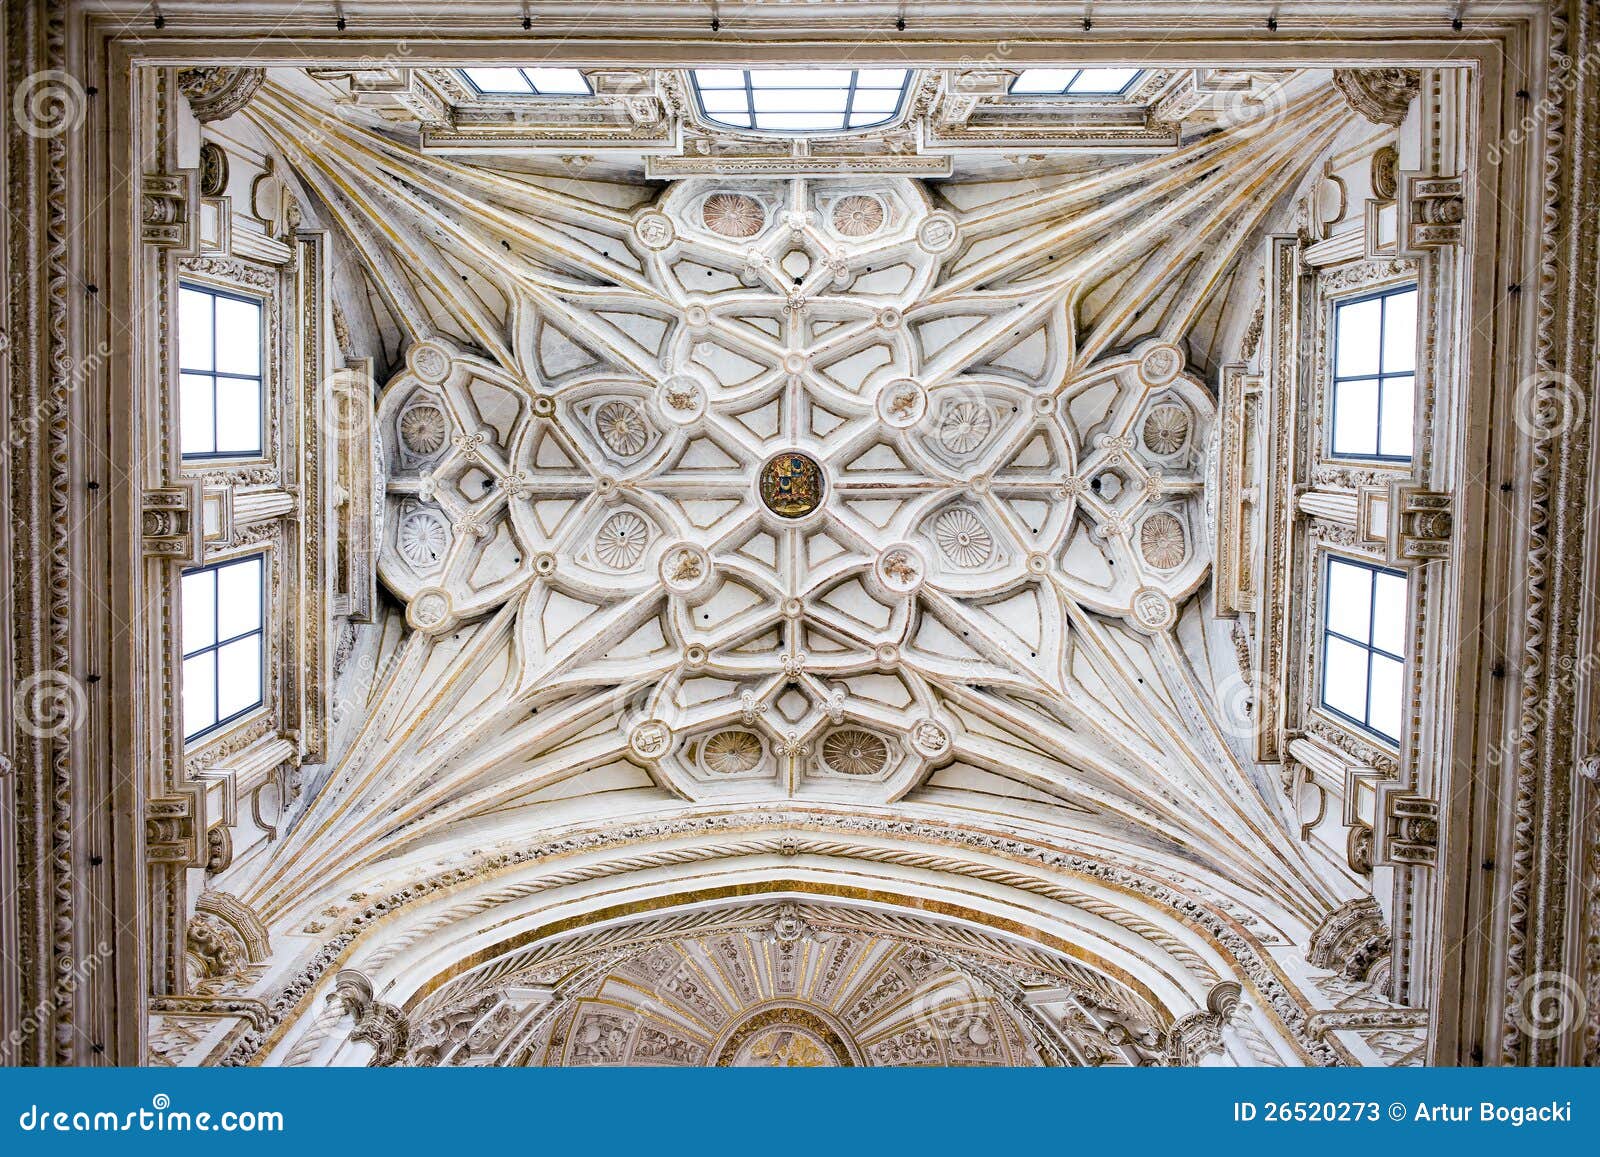 Het geribbelde Plafond van de Kluis van de Mezquita Kathedraal. Mezquita historisch overladen geribbeld de kluisplafond van de Kathedraal van het dwarsschip in Cordoba, Spanje.